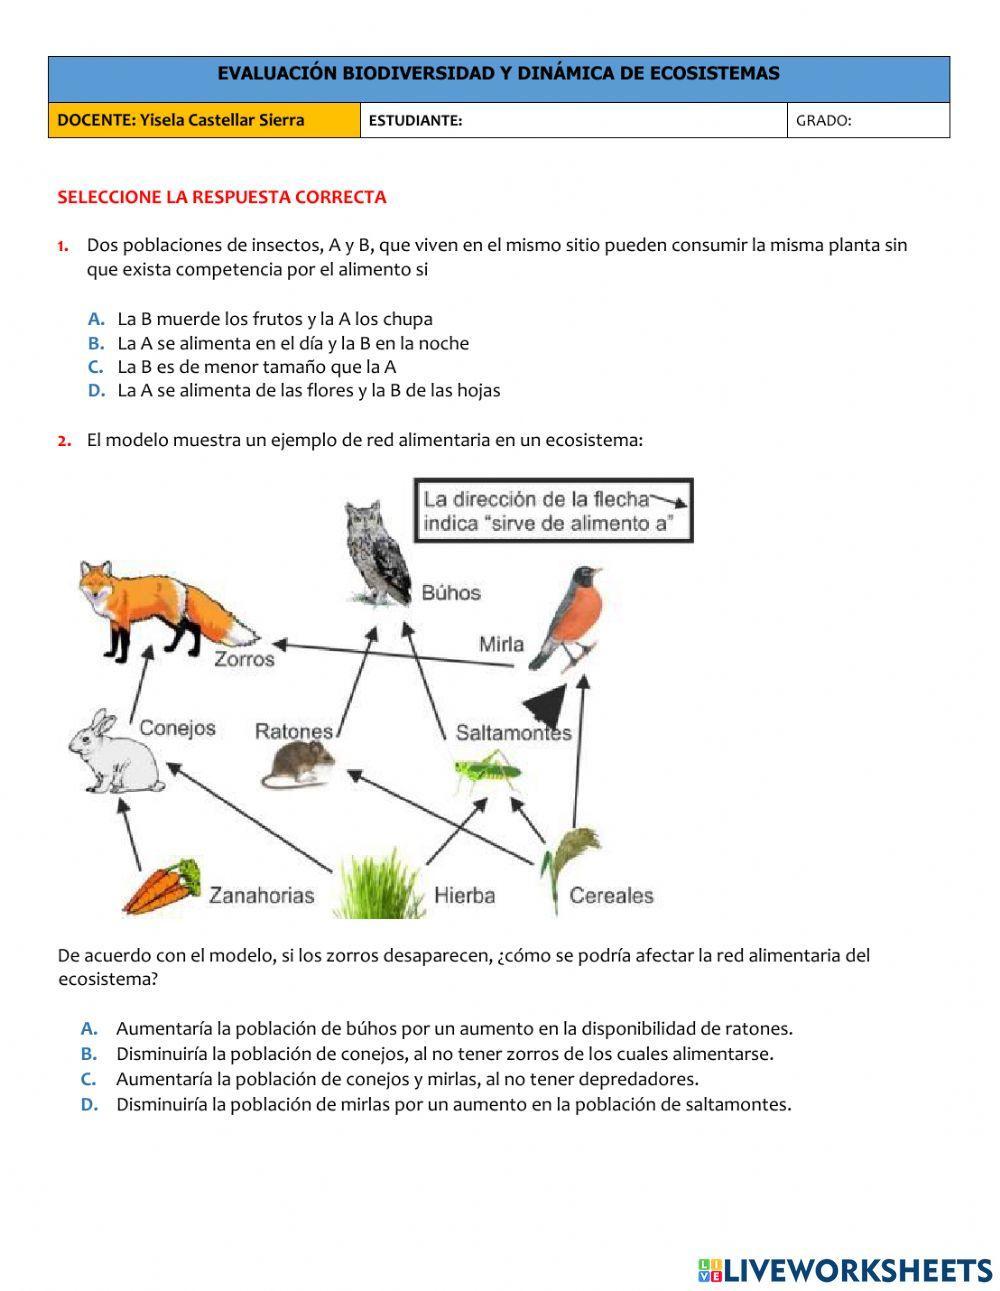 Biodiversidad y dinámica de ecosistemas